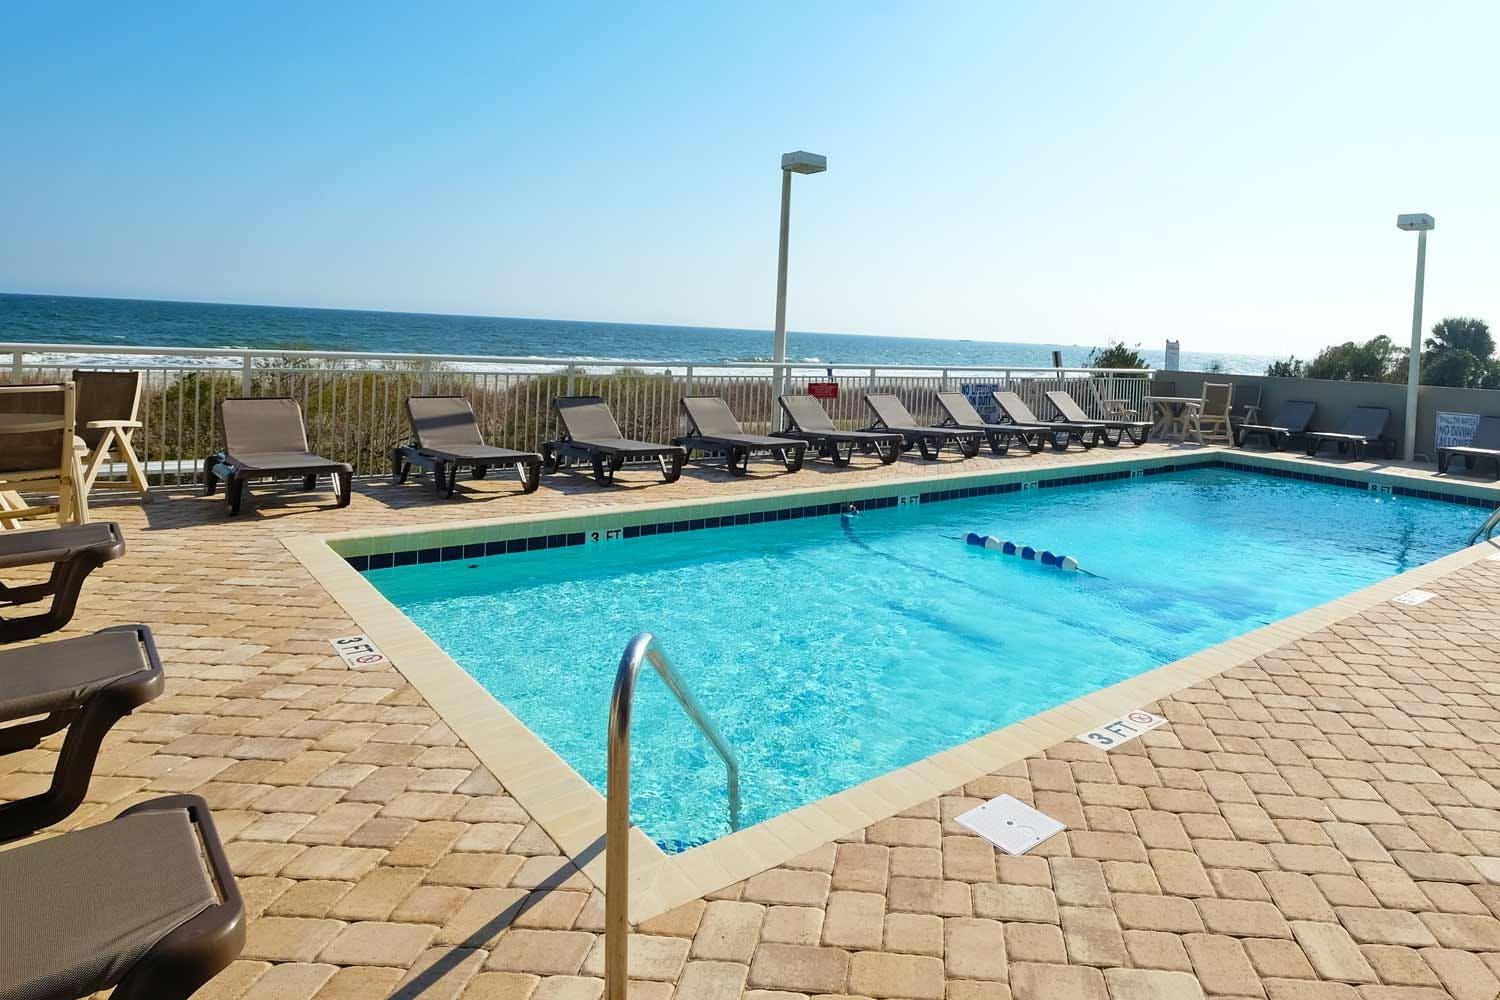 Atlantica Resort - 1 Bedroom Oceanfront Condo - South